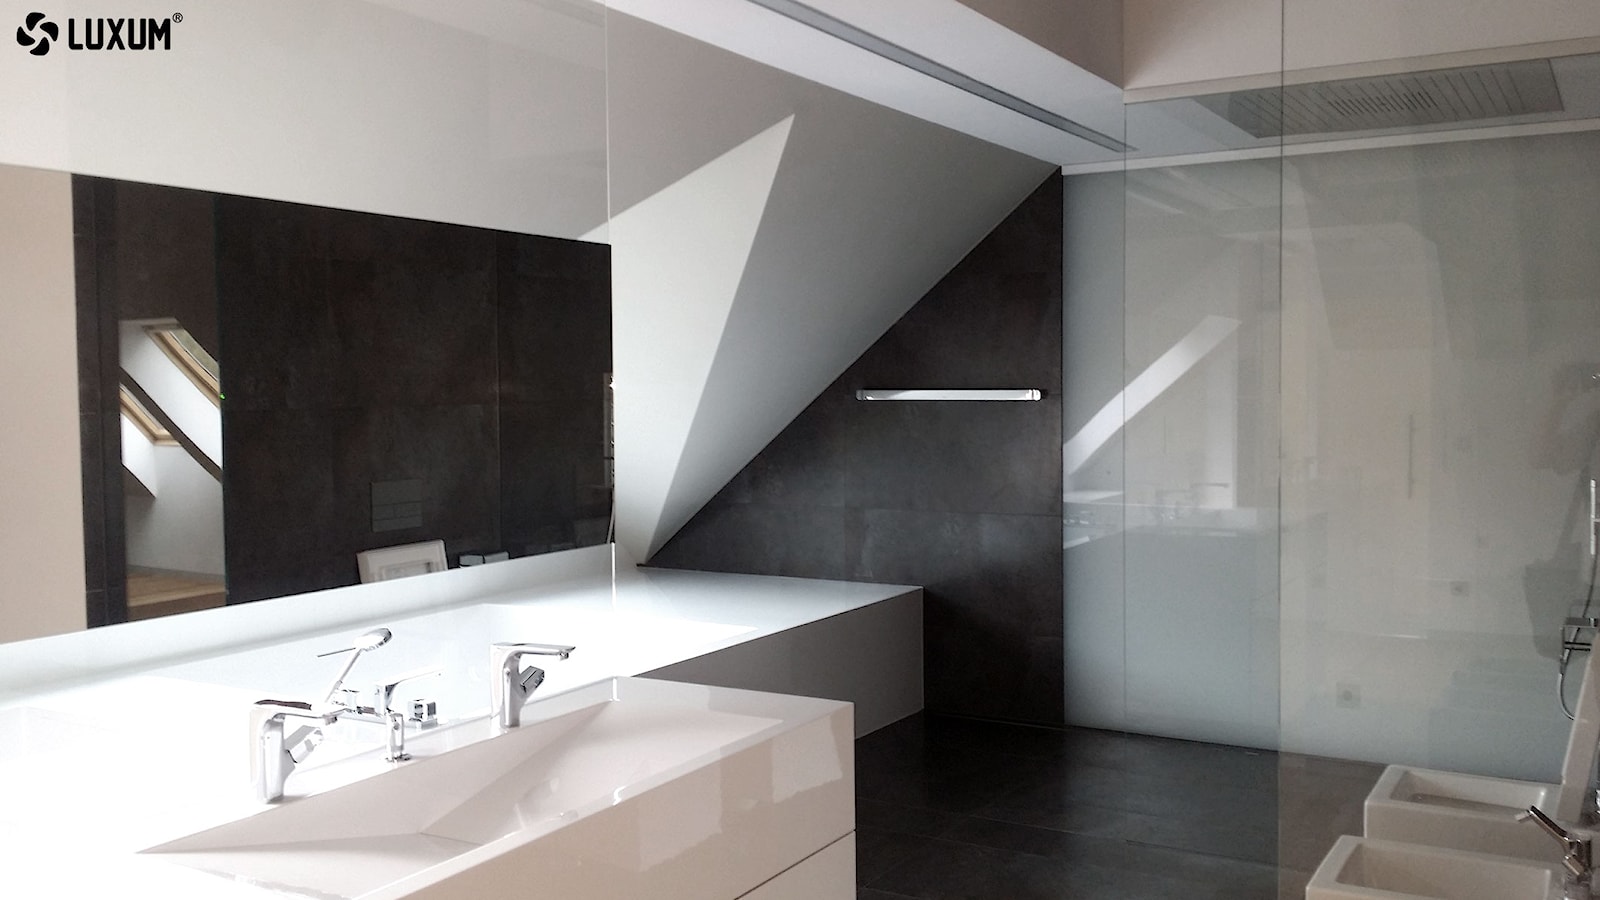 Nowoczesna zabudowa łazienkowa z kompozytu GFK LUXUM. - zdjęcie od Luxum - Homebook